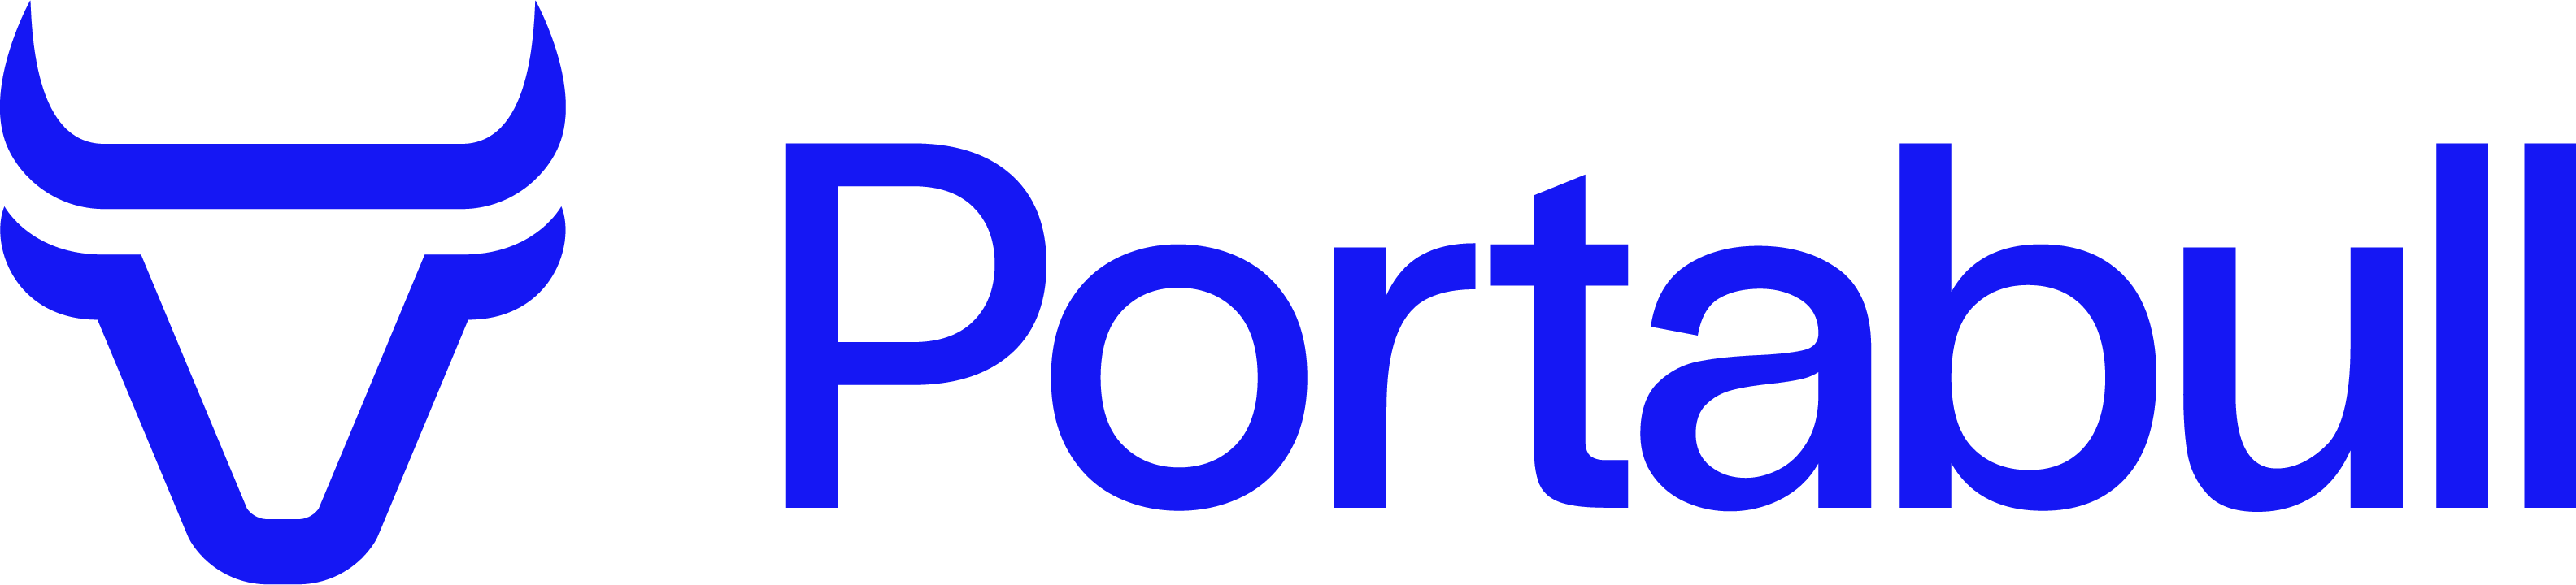 Portabull logo